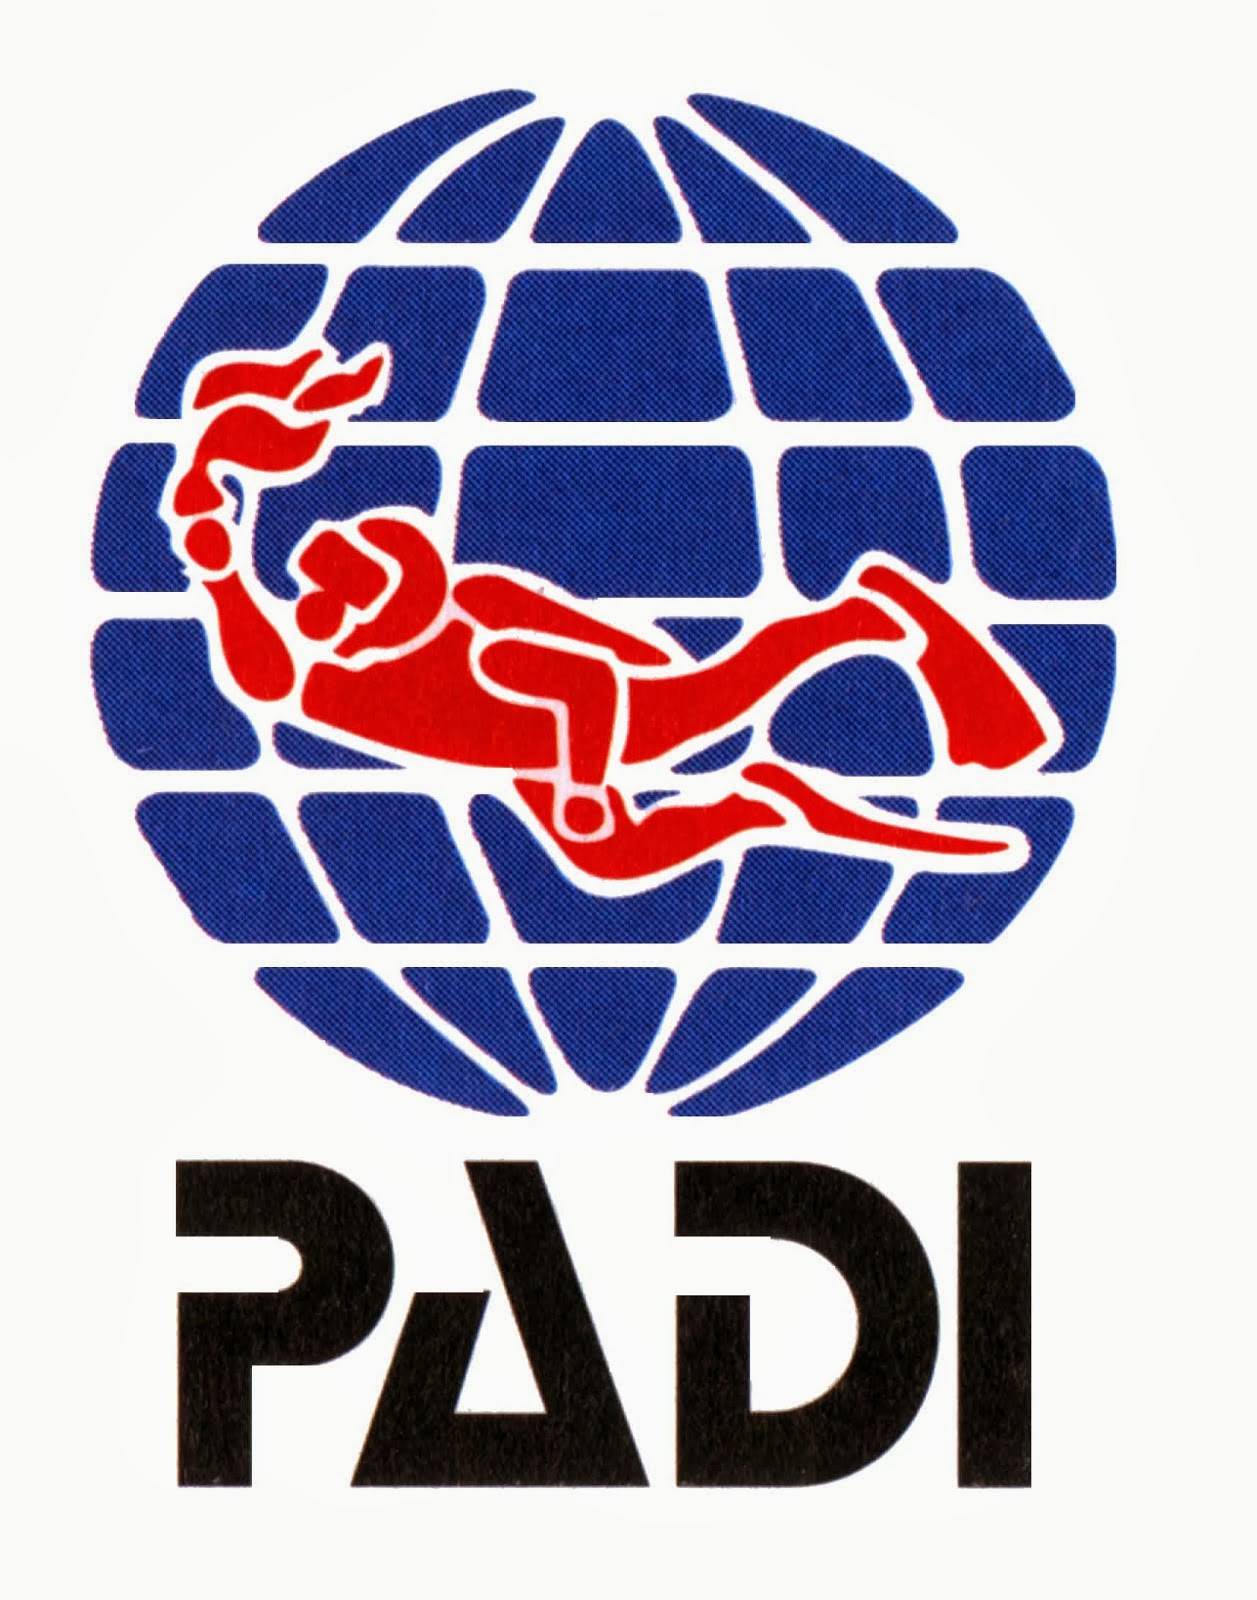 LOGO PADI | Gambar Logo